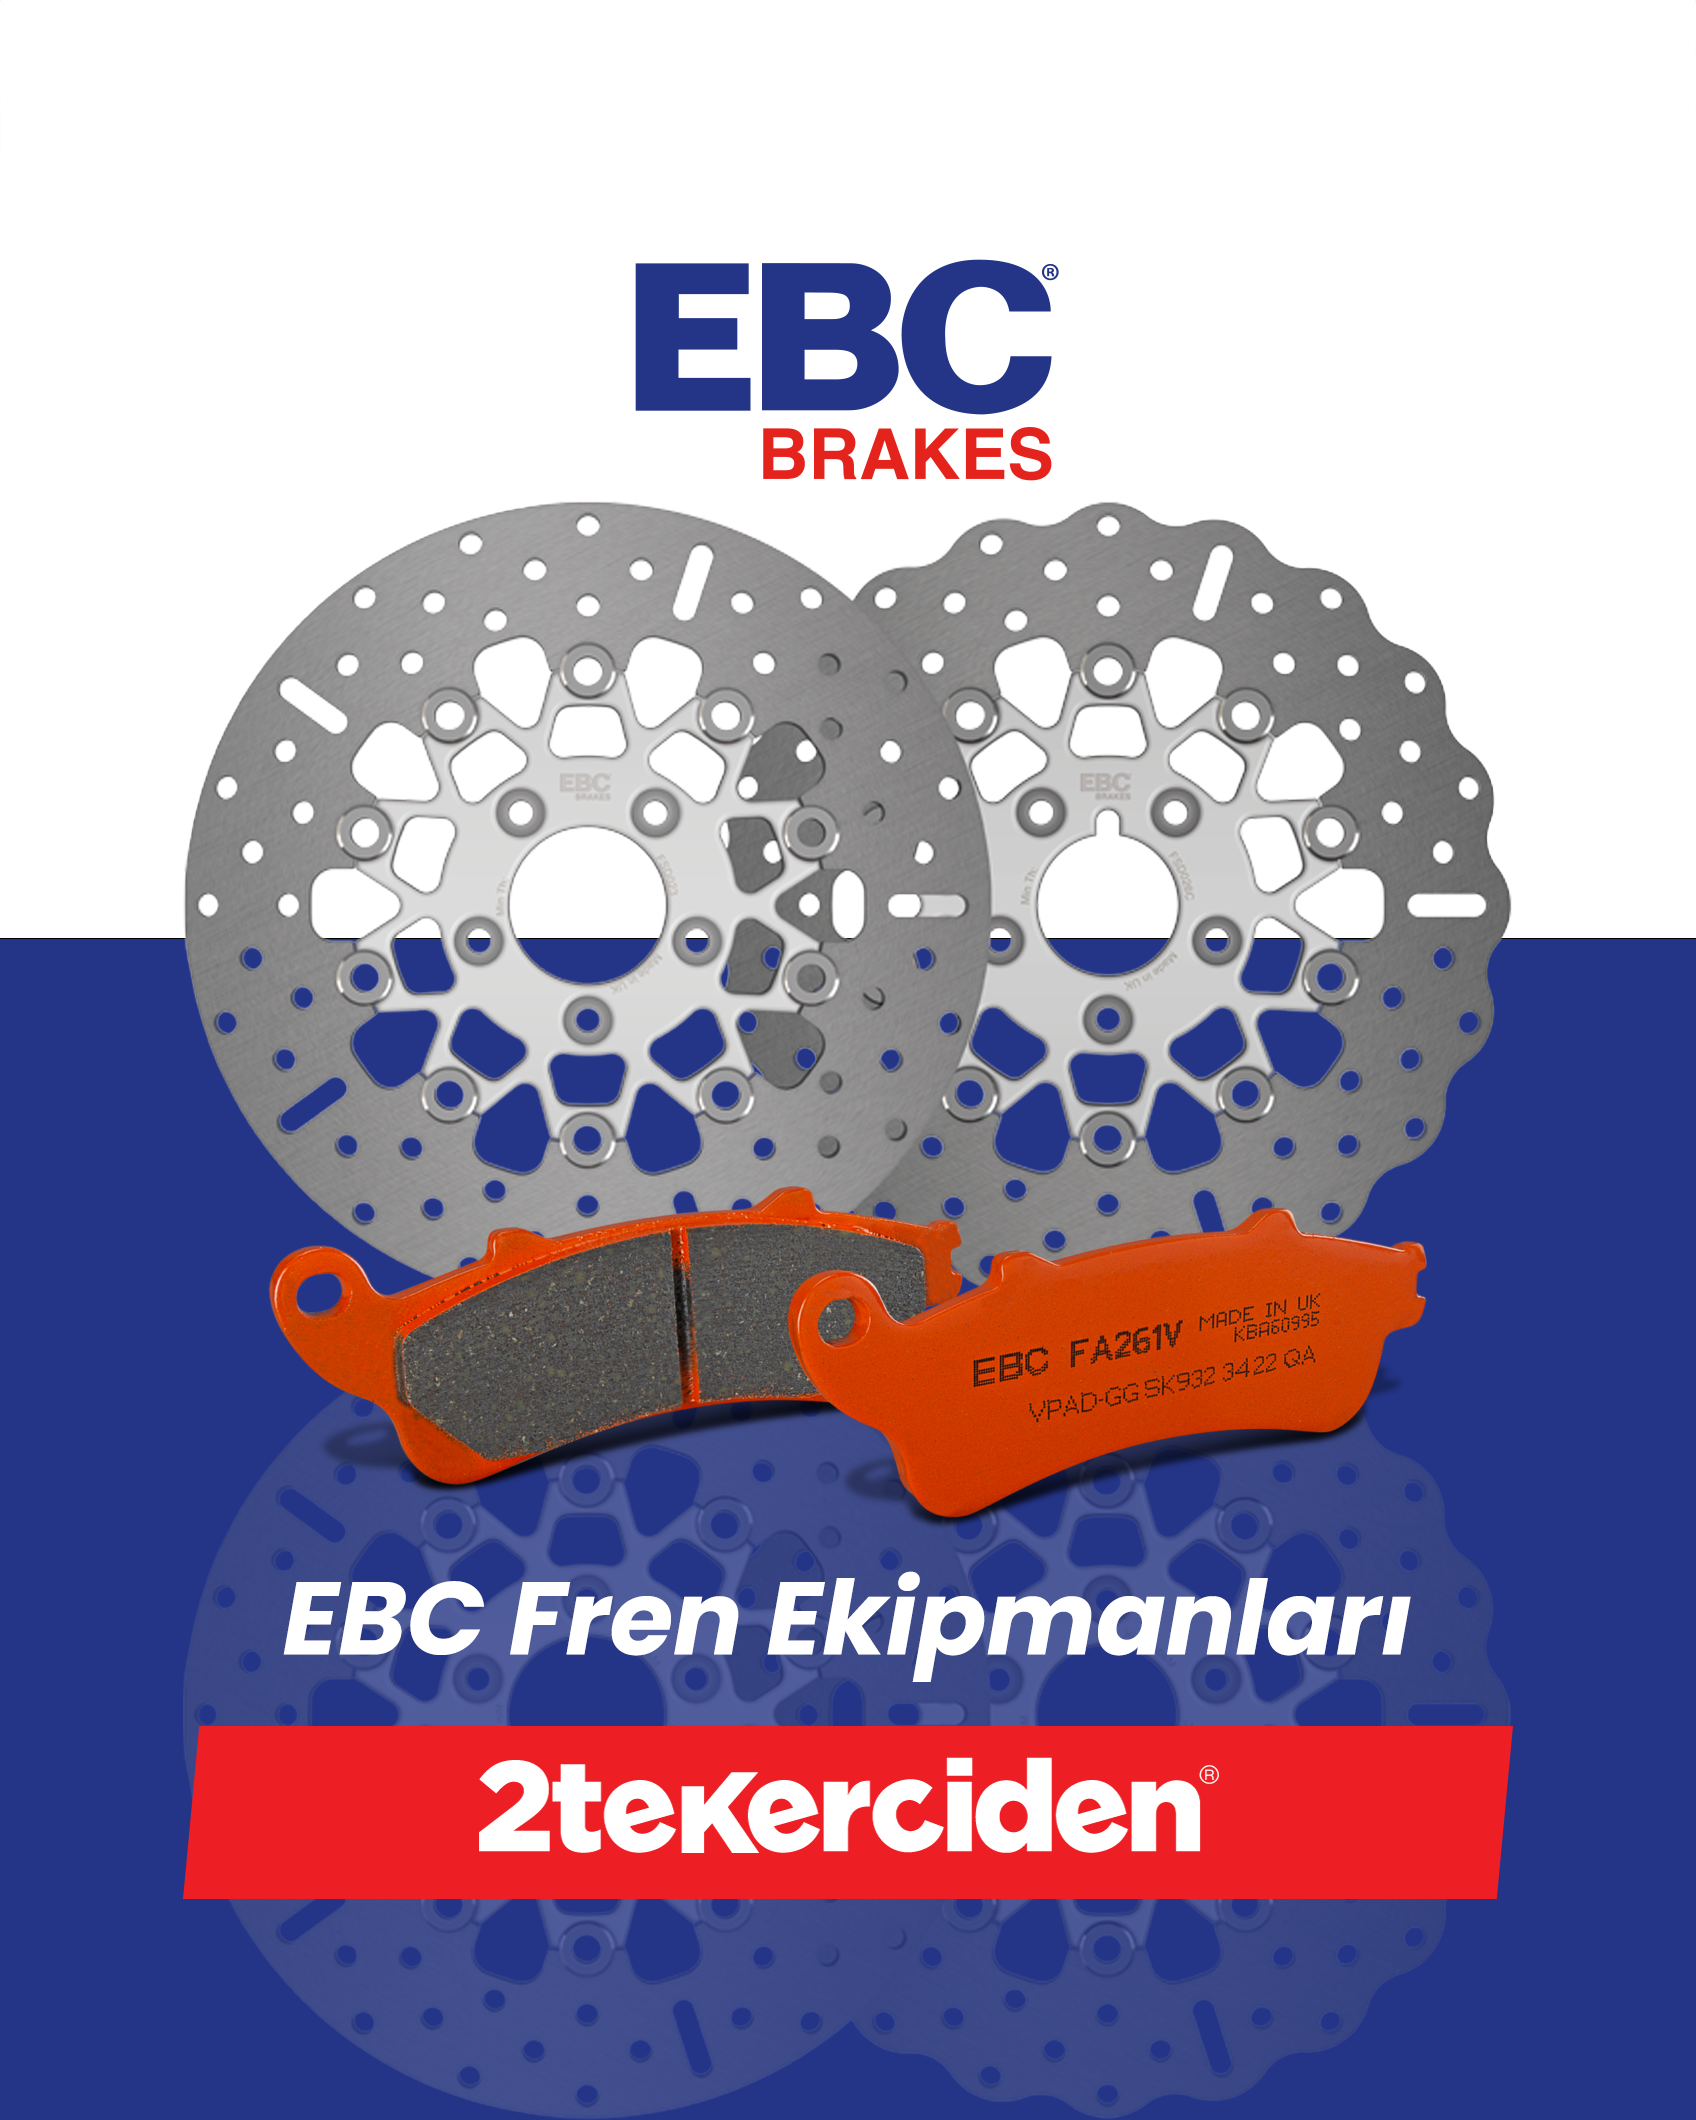 EBC Fren Ekipmanları: Motosiklet Sürücülerine Güven ve Performans Sunumu